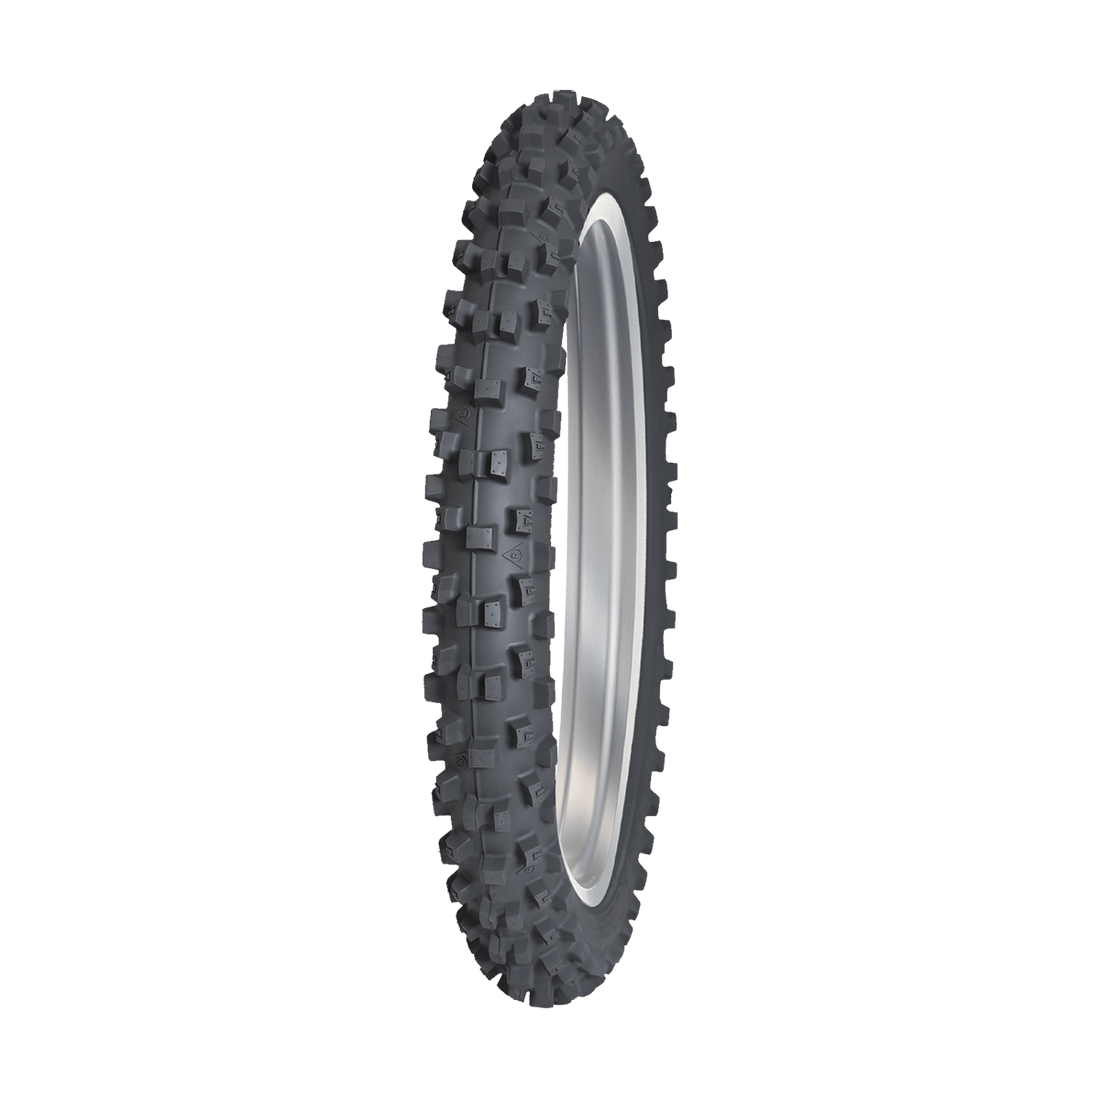 Neumáticos bidireccionales Dunlop geomax at82 para terrenos blandos y duros